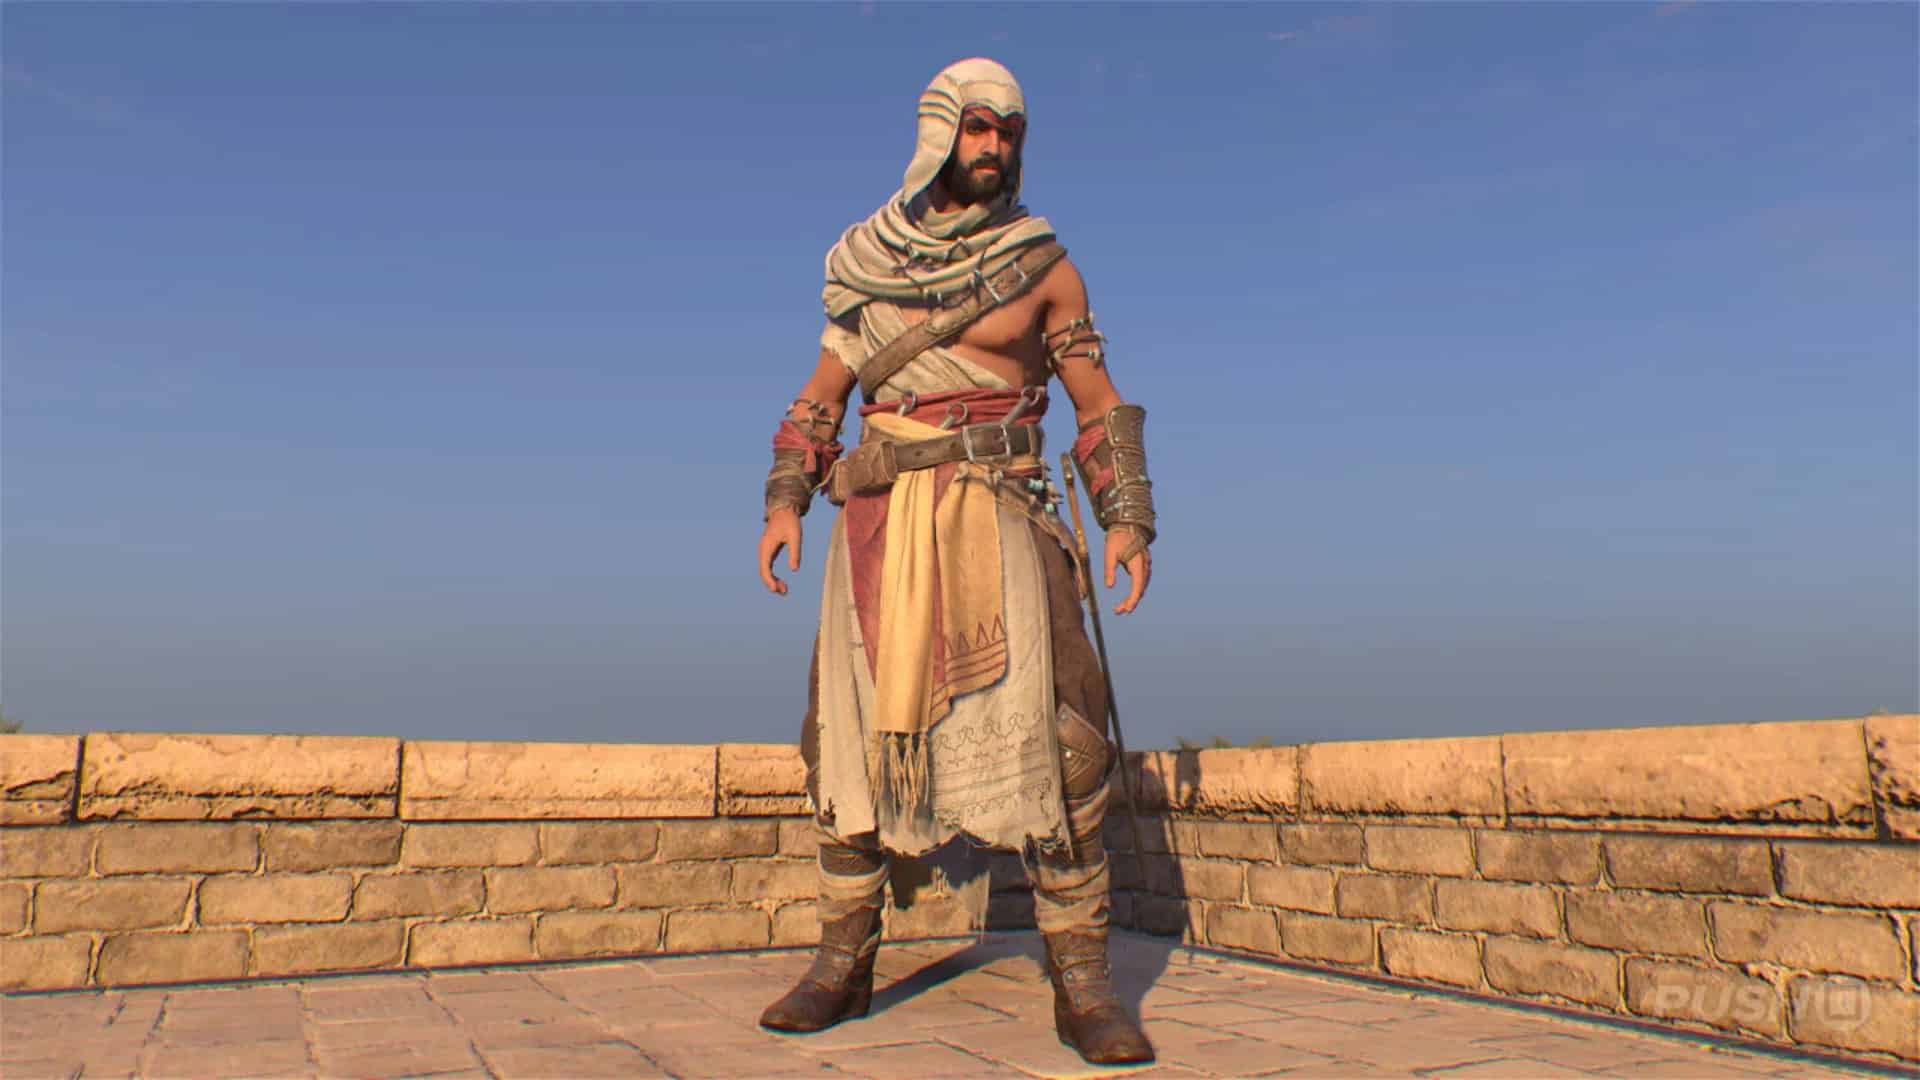 Assassin's Creed Mirage (@AssassinsDLC) / X